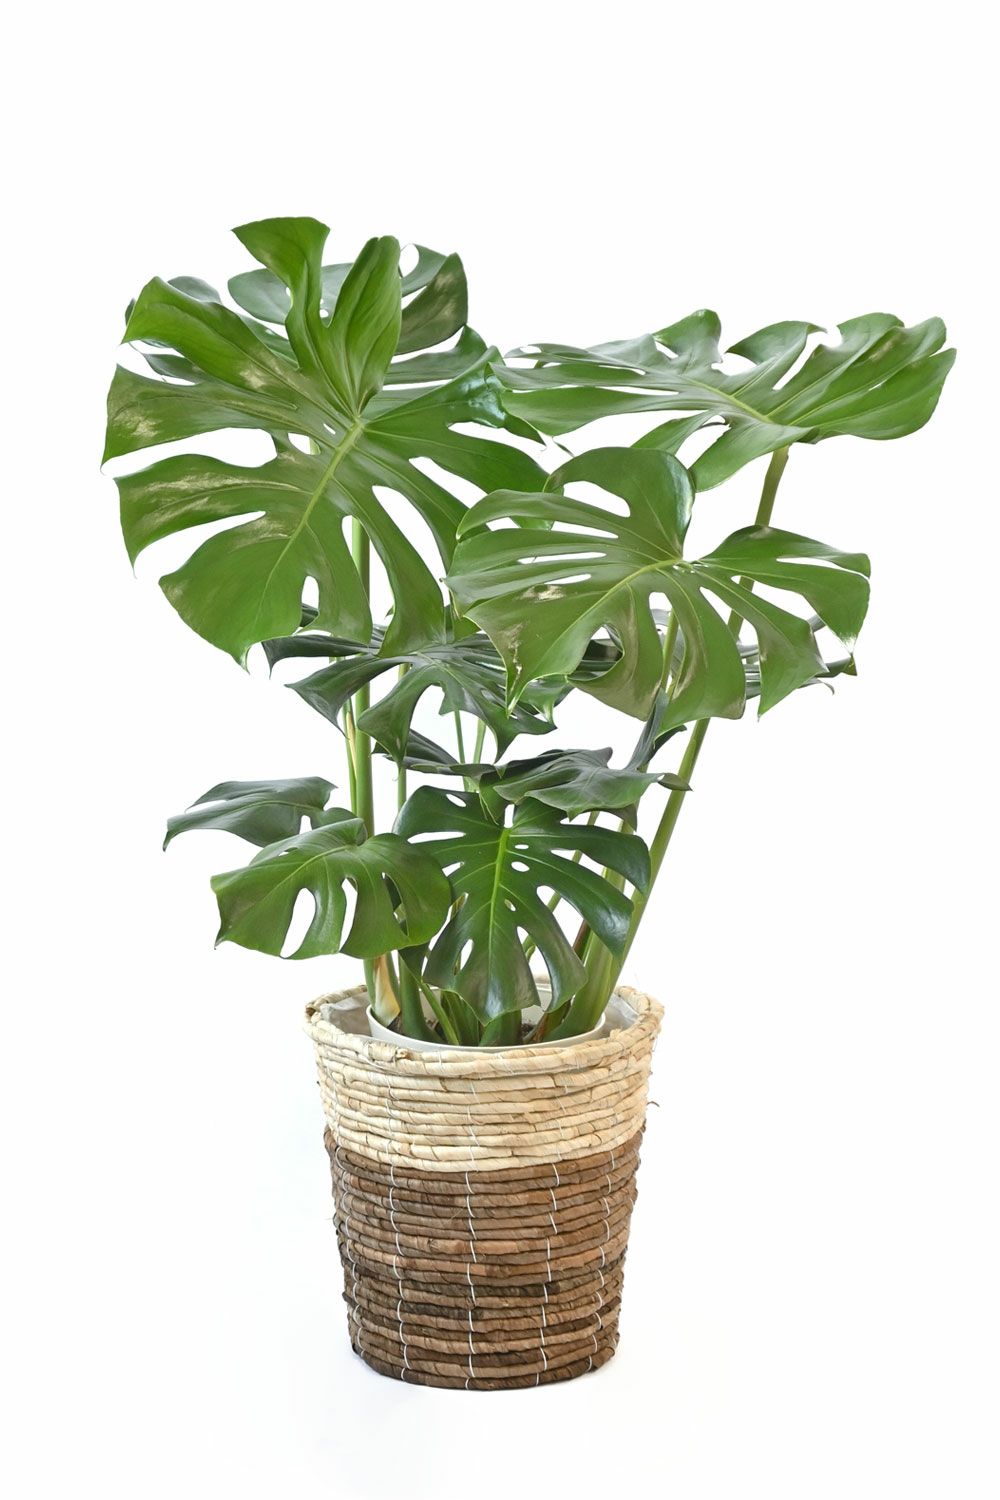 モンステラ 7号鉢 (レギュラーサイズ) 3種類から選べる鉢カバー付 観葉植物